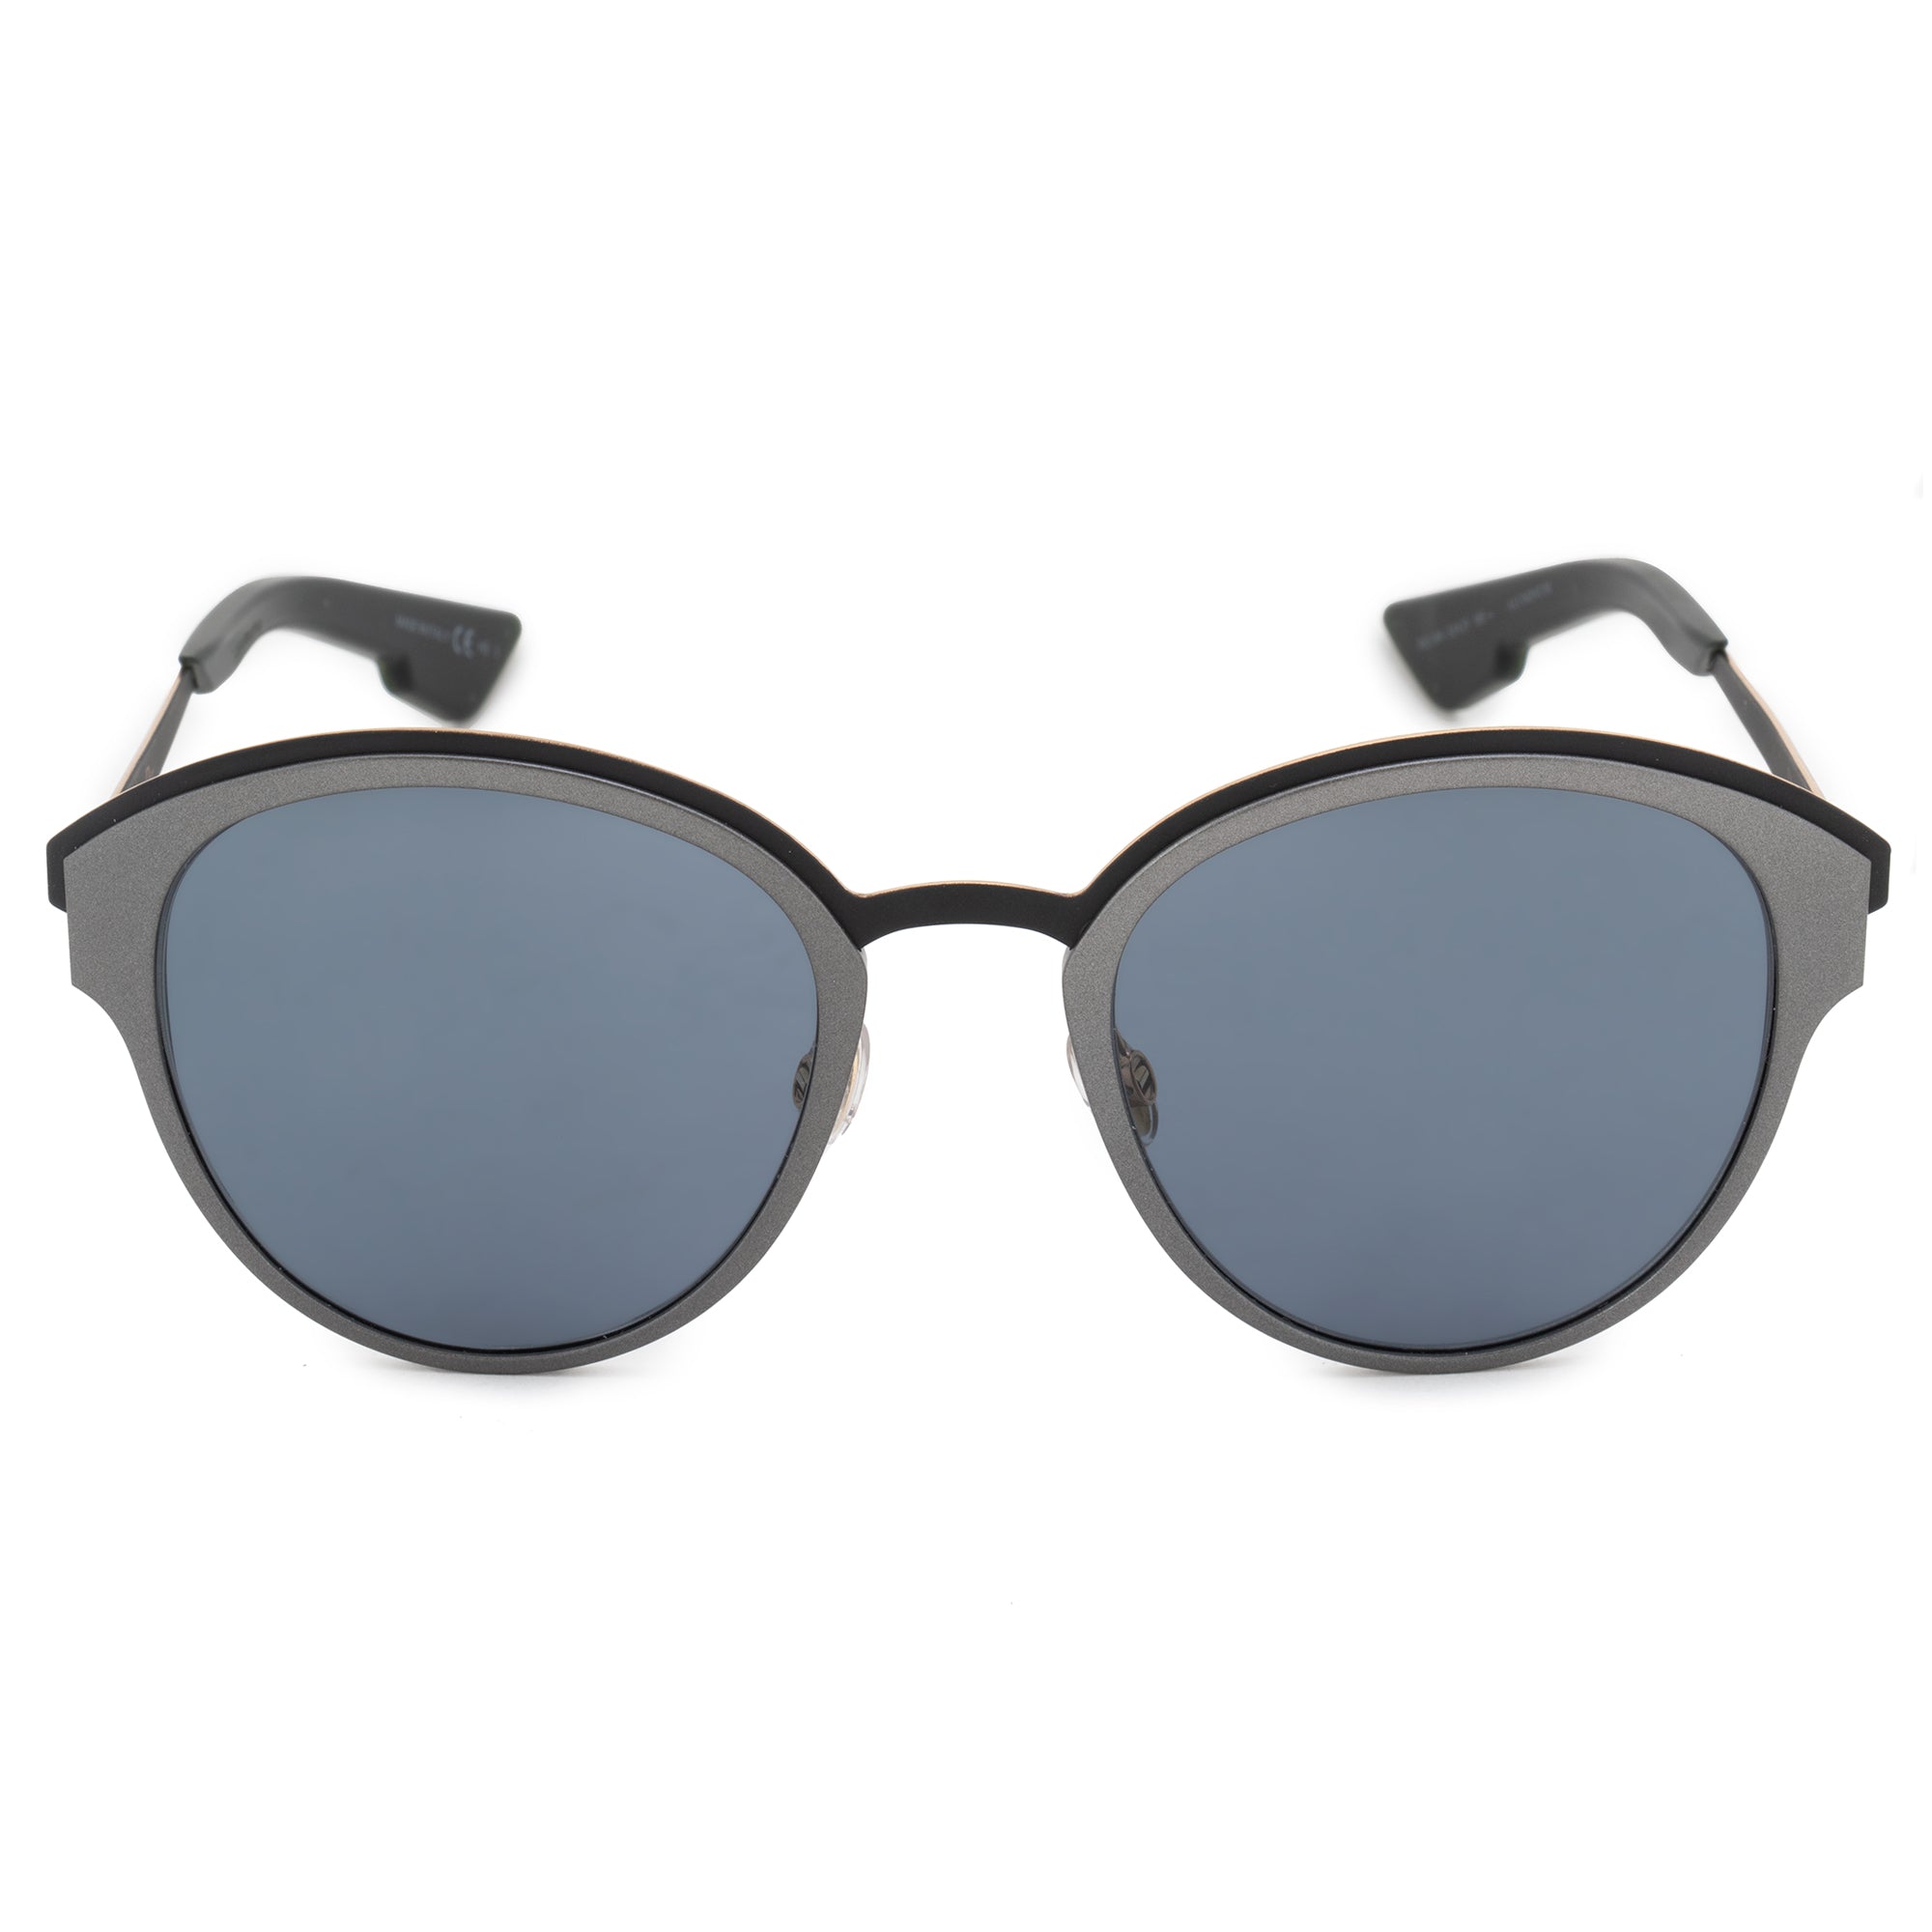 Christian Dior Sun Oval Sunglasses RCO9A 52